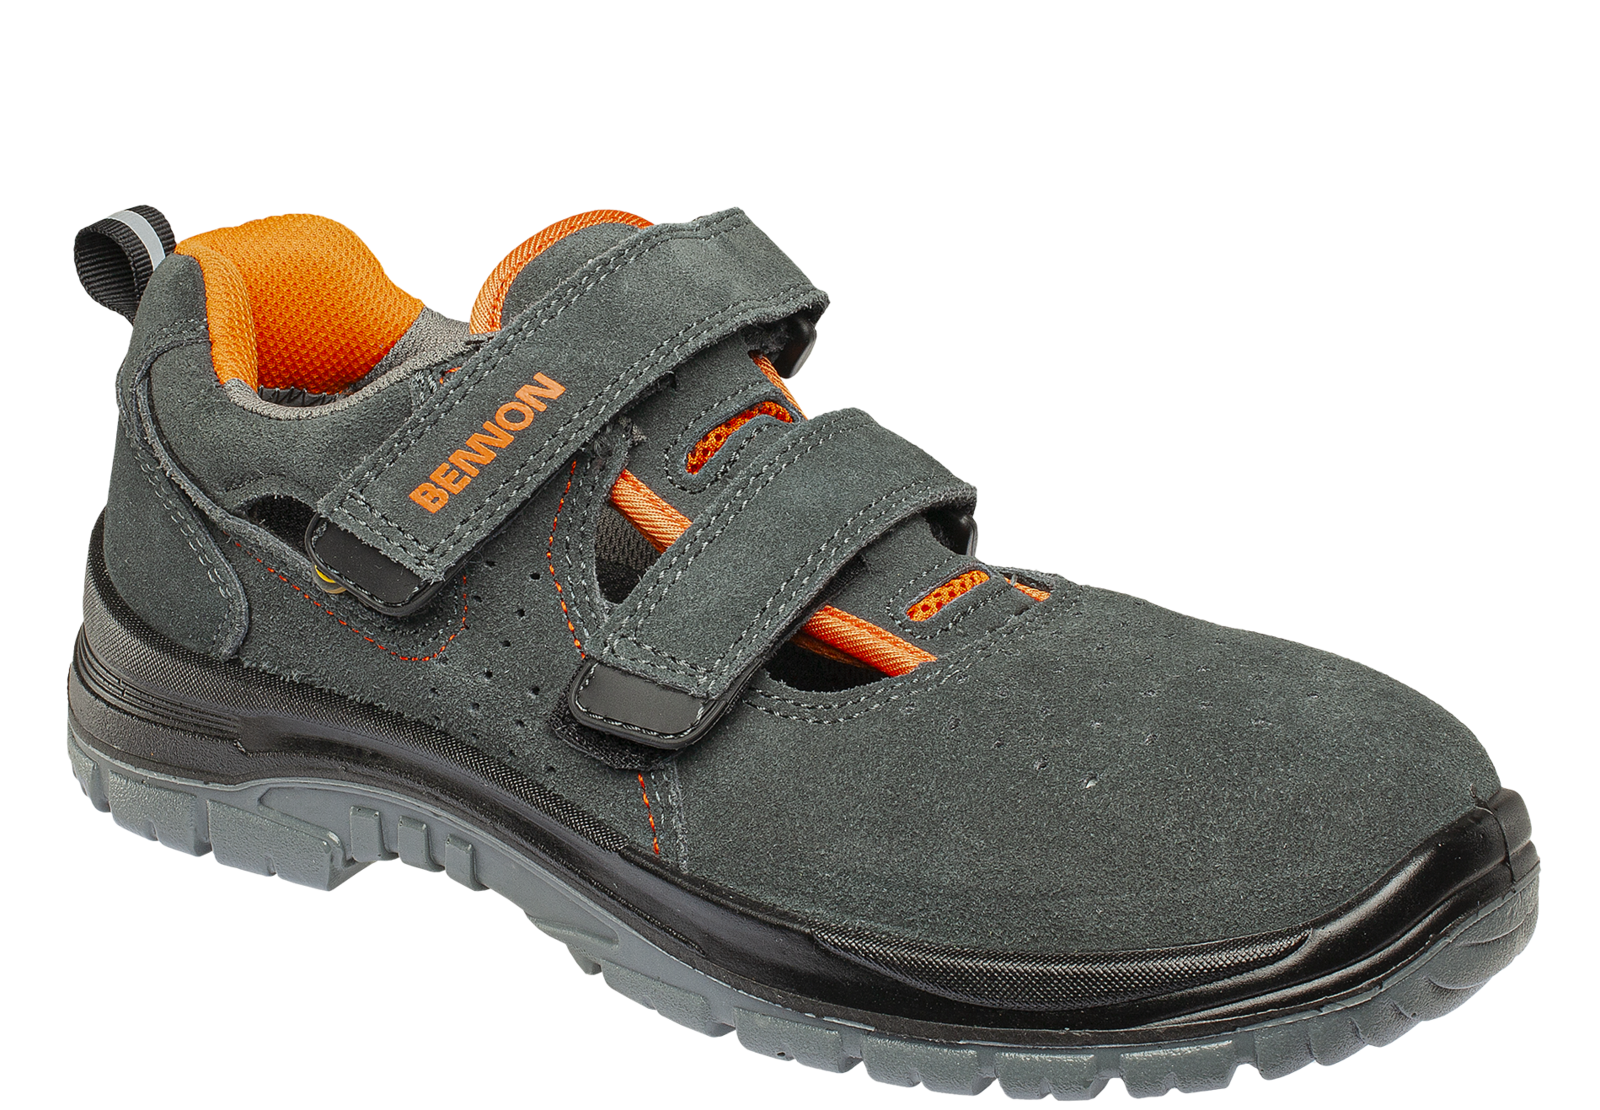 Bezpečnostné sandále Bennon Tobler S1 ESD - veľkosť: 37, farba: sivá/oranžová